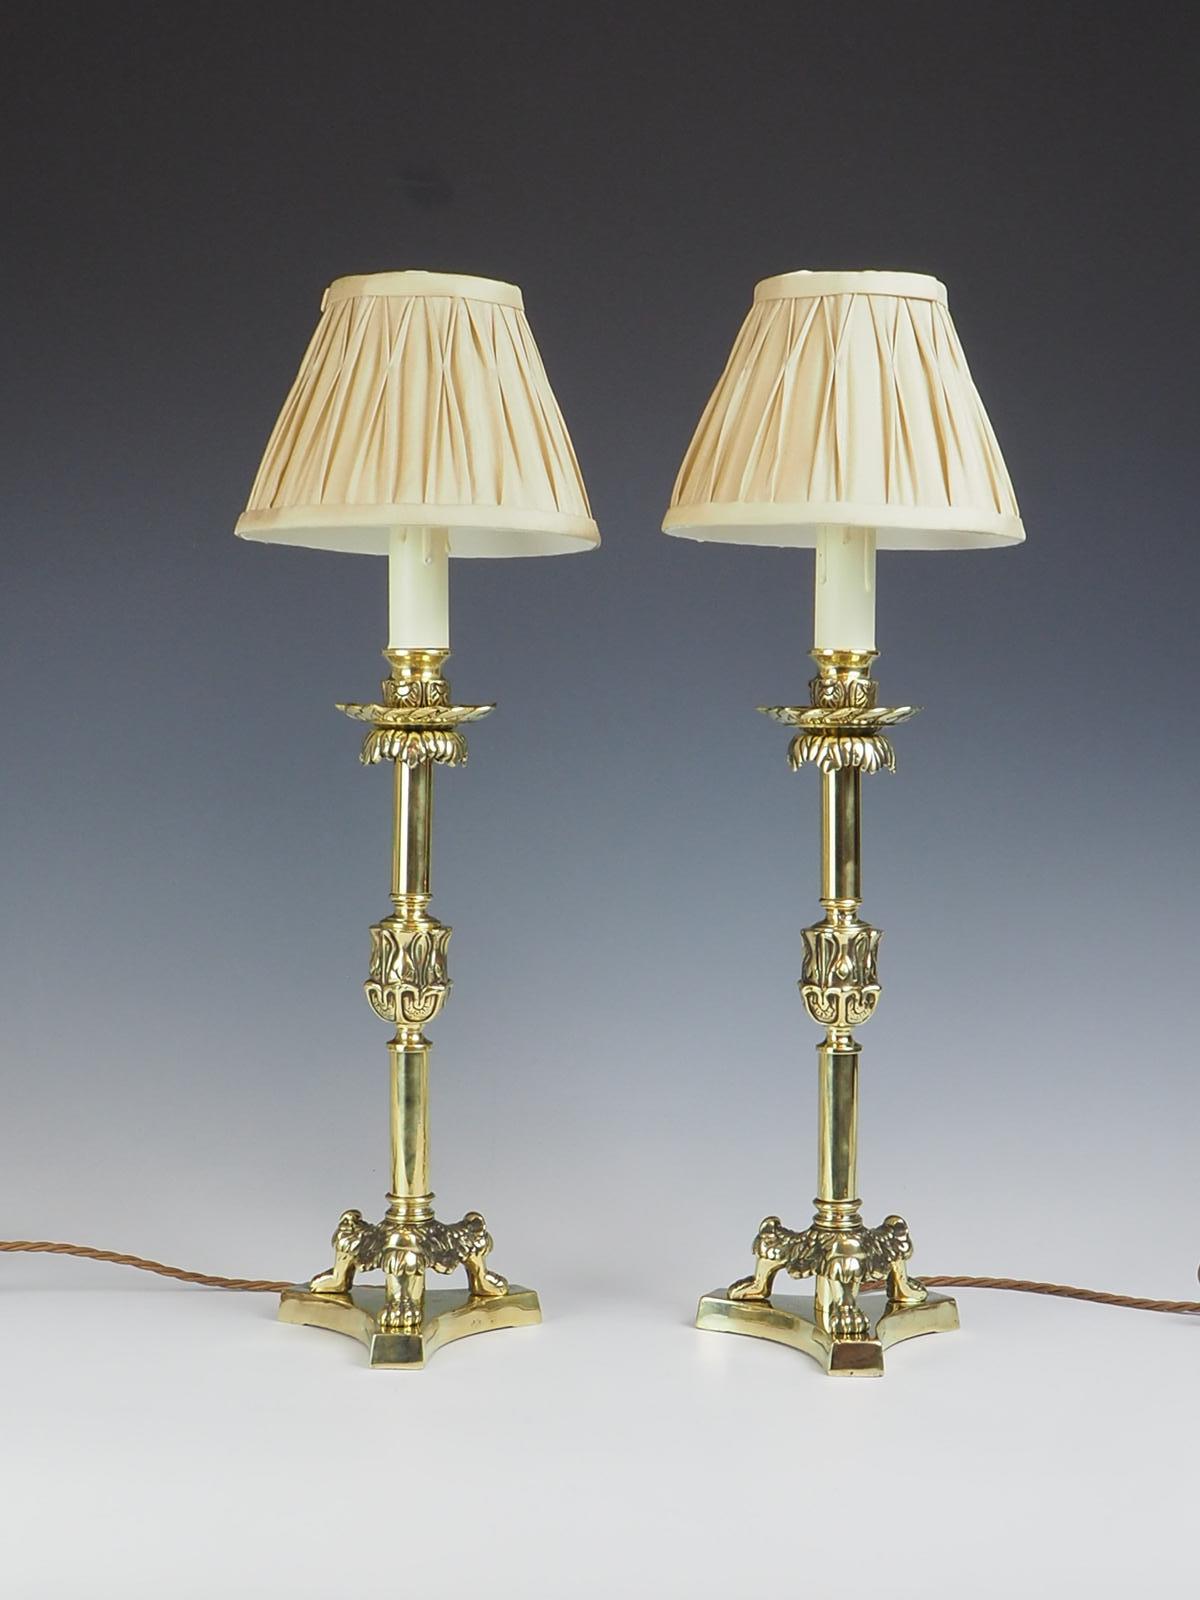 Cette exquise paire de lampes chandelier en laiton du XIXe siècle présente un design élégant qui ne manquera pas d'ajouter une touche de sophistication à n'importe quel espace.

Posés sur des pieds en forme de griffes de lion tridimensionnelles, ces